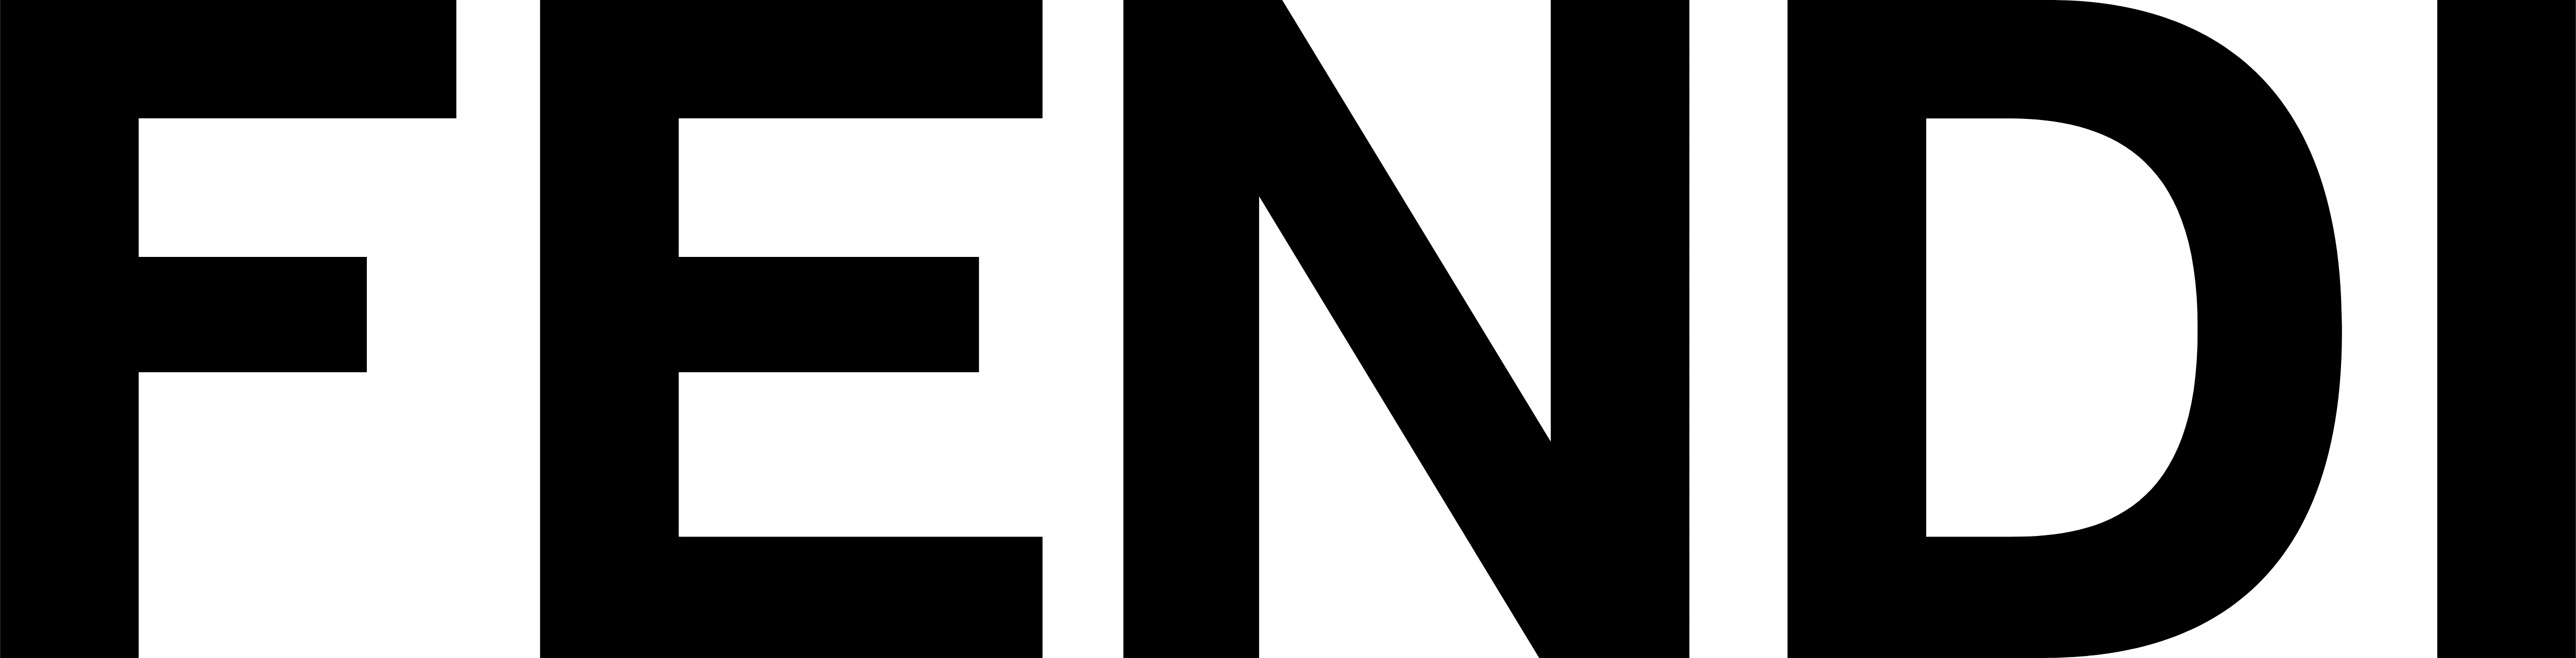 Fendi Logo - Fendi Watches